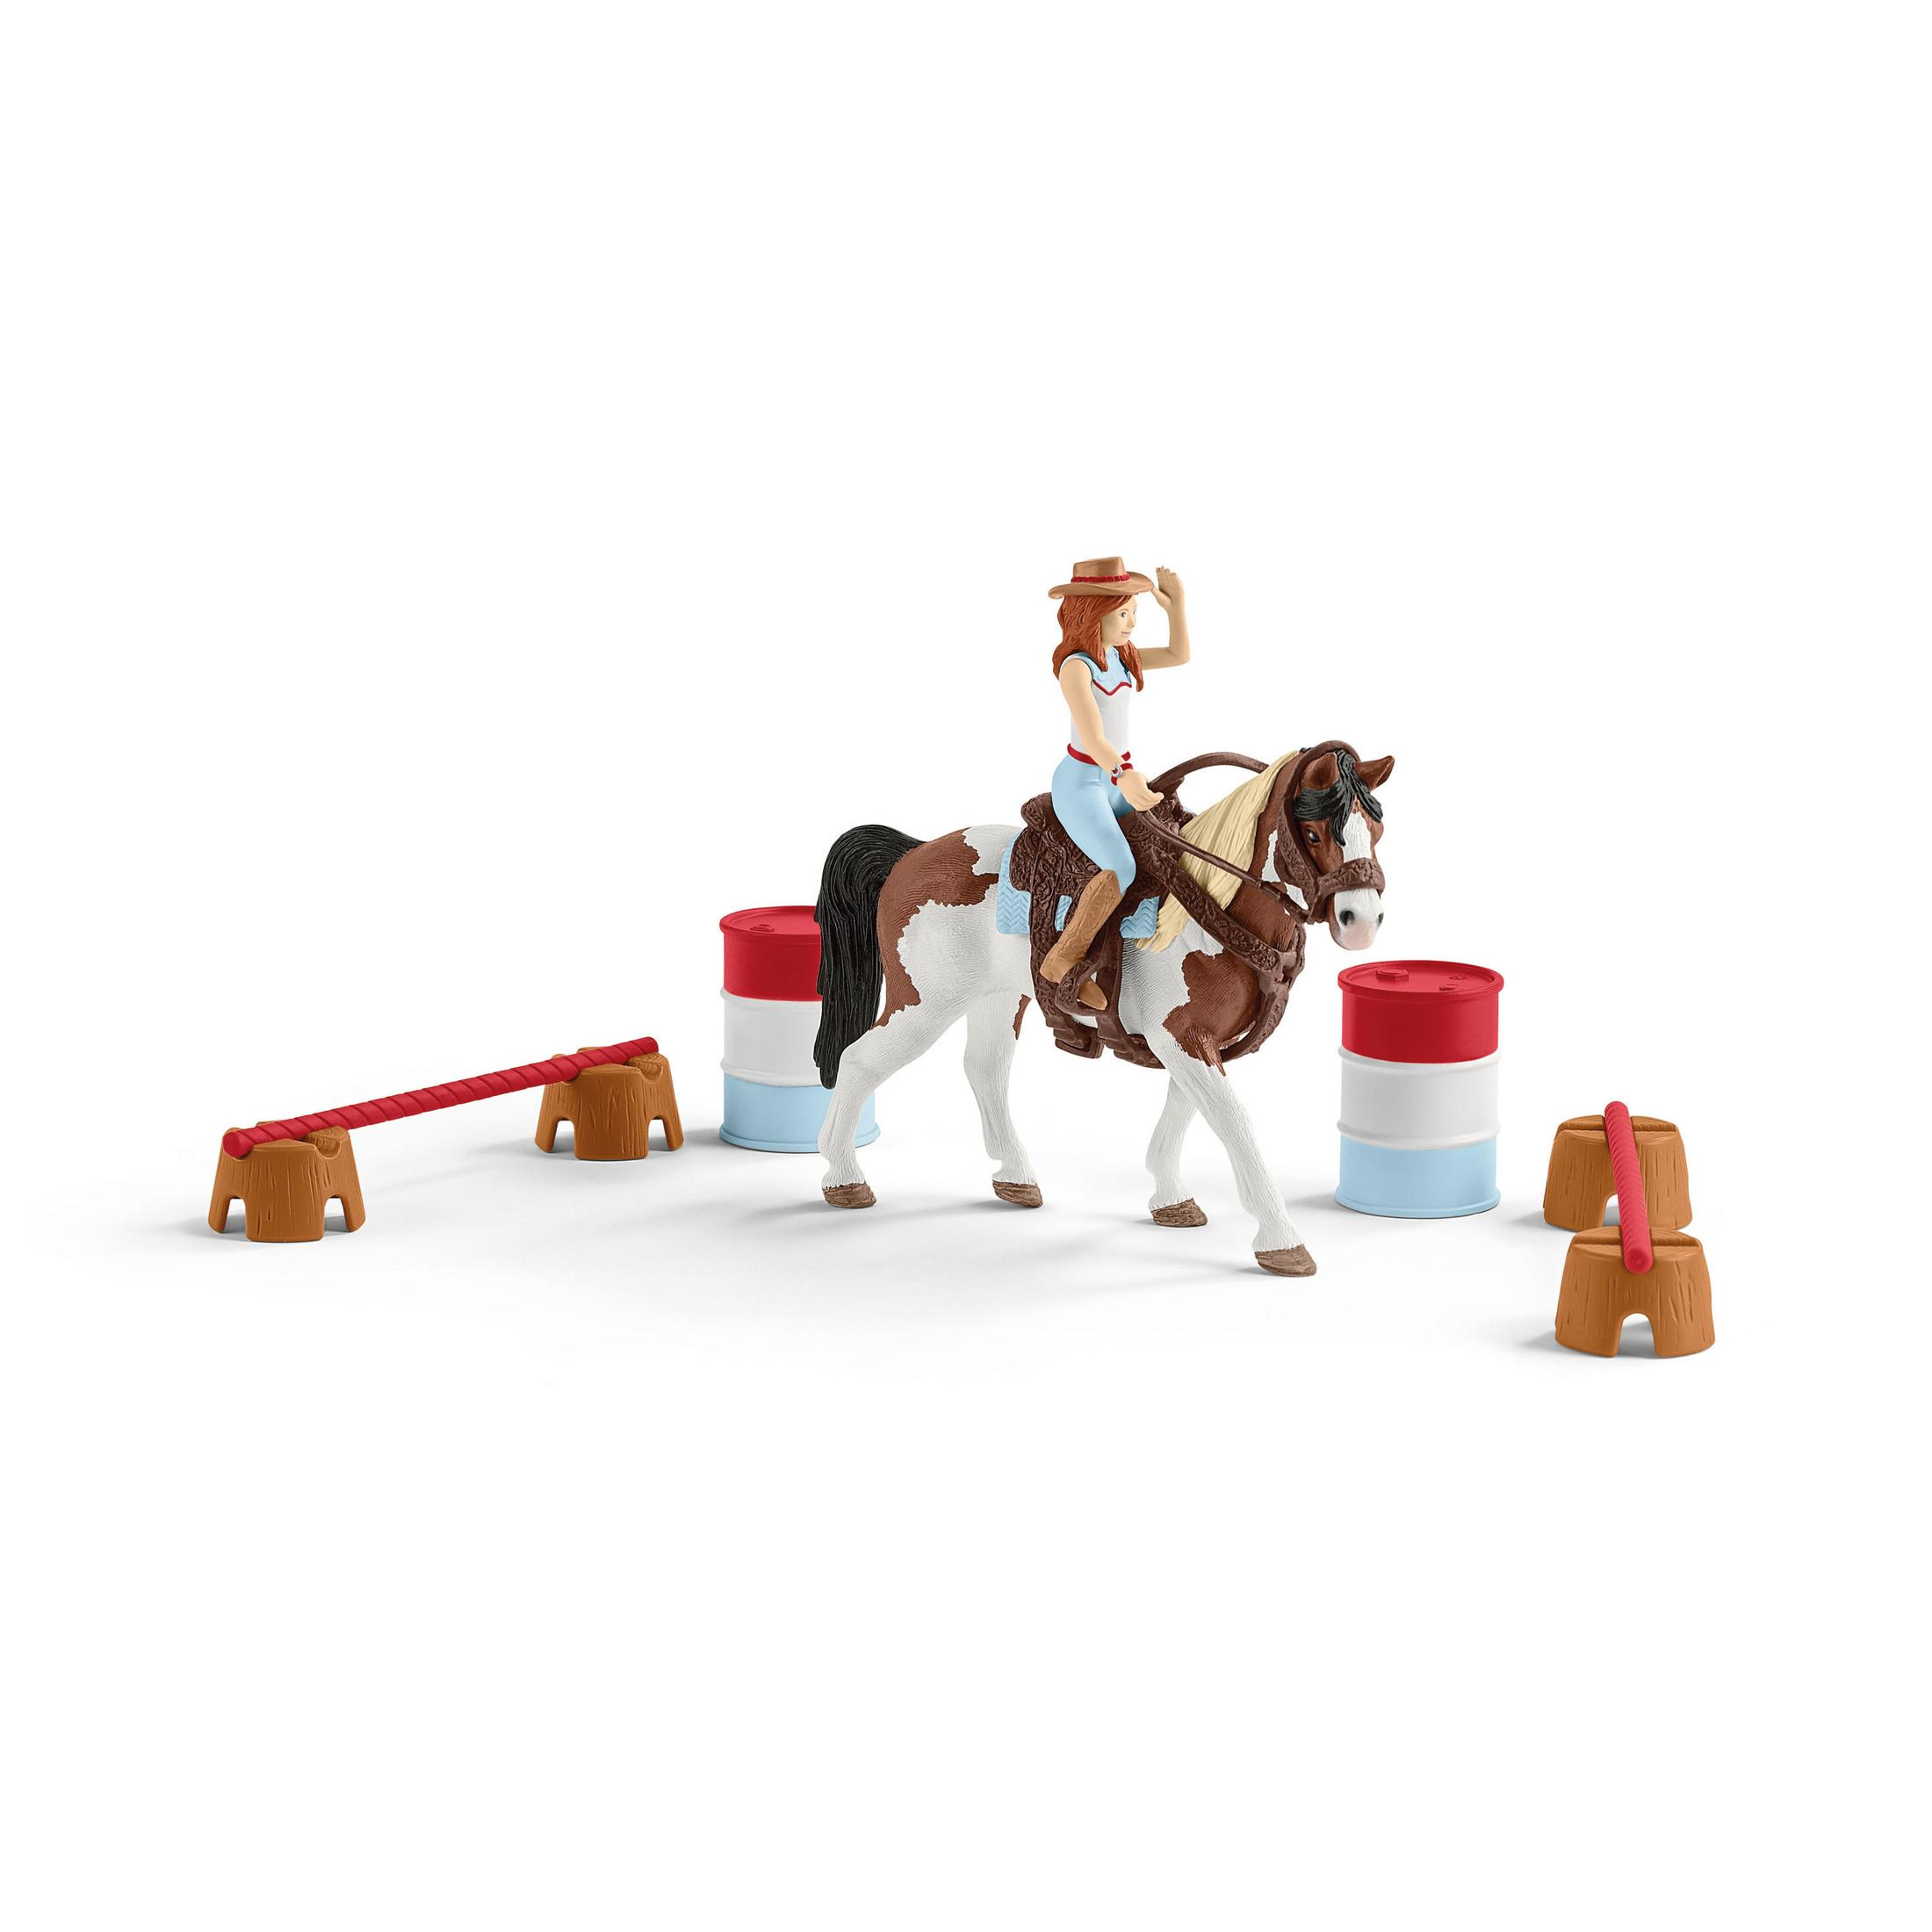 MOUNTAIN Mehrfarbig SCHLEICH STUTE Spielfigurenset, ROCKY HC 42469 PFERDESHOW HORSE